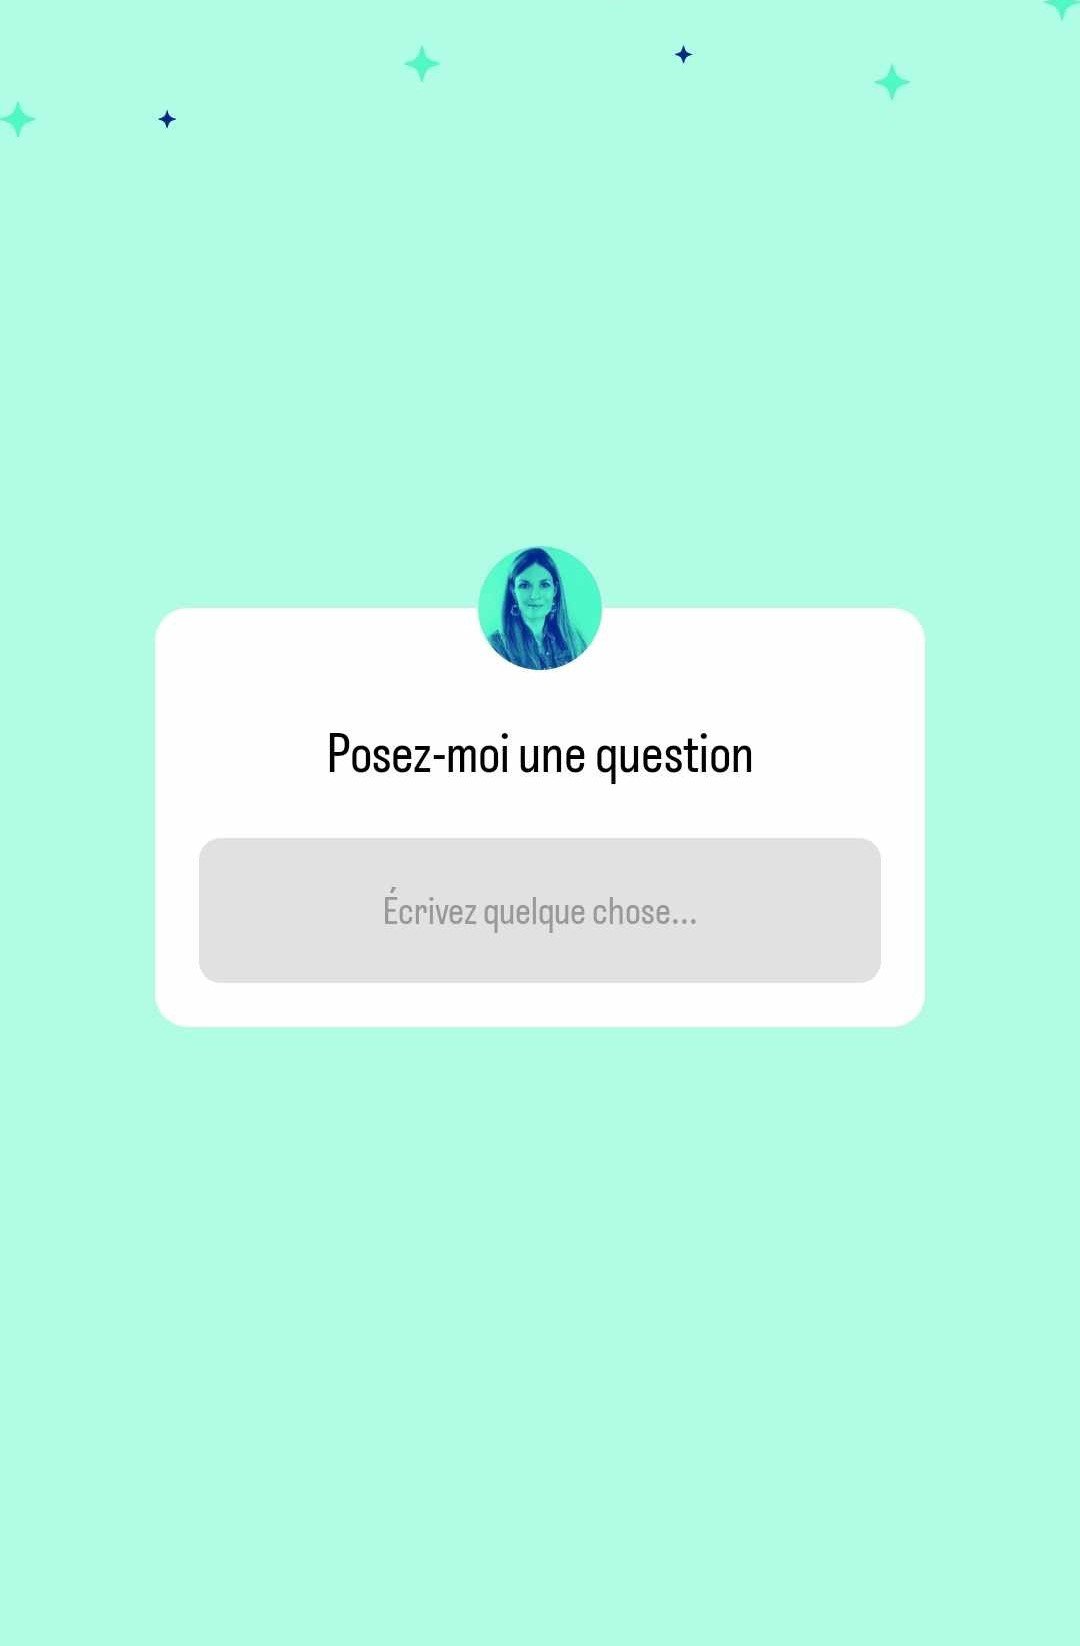 Magnetic Story - Question anonyme sur Instagram : comment ça marche ?